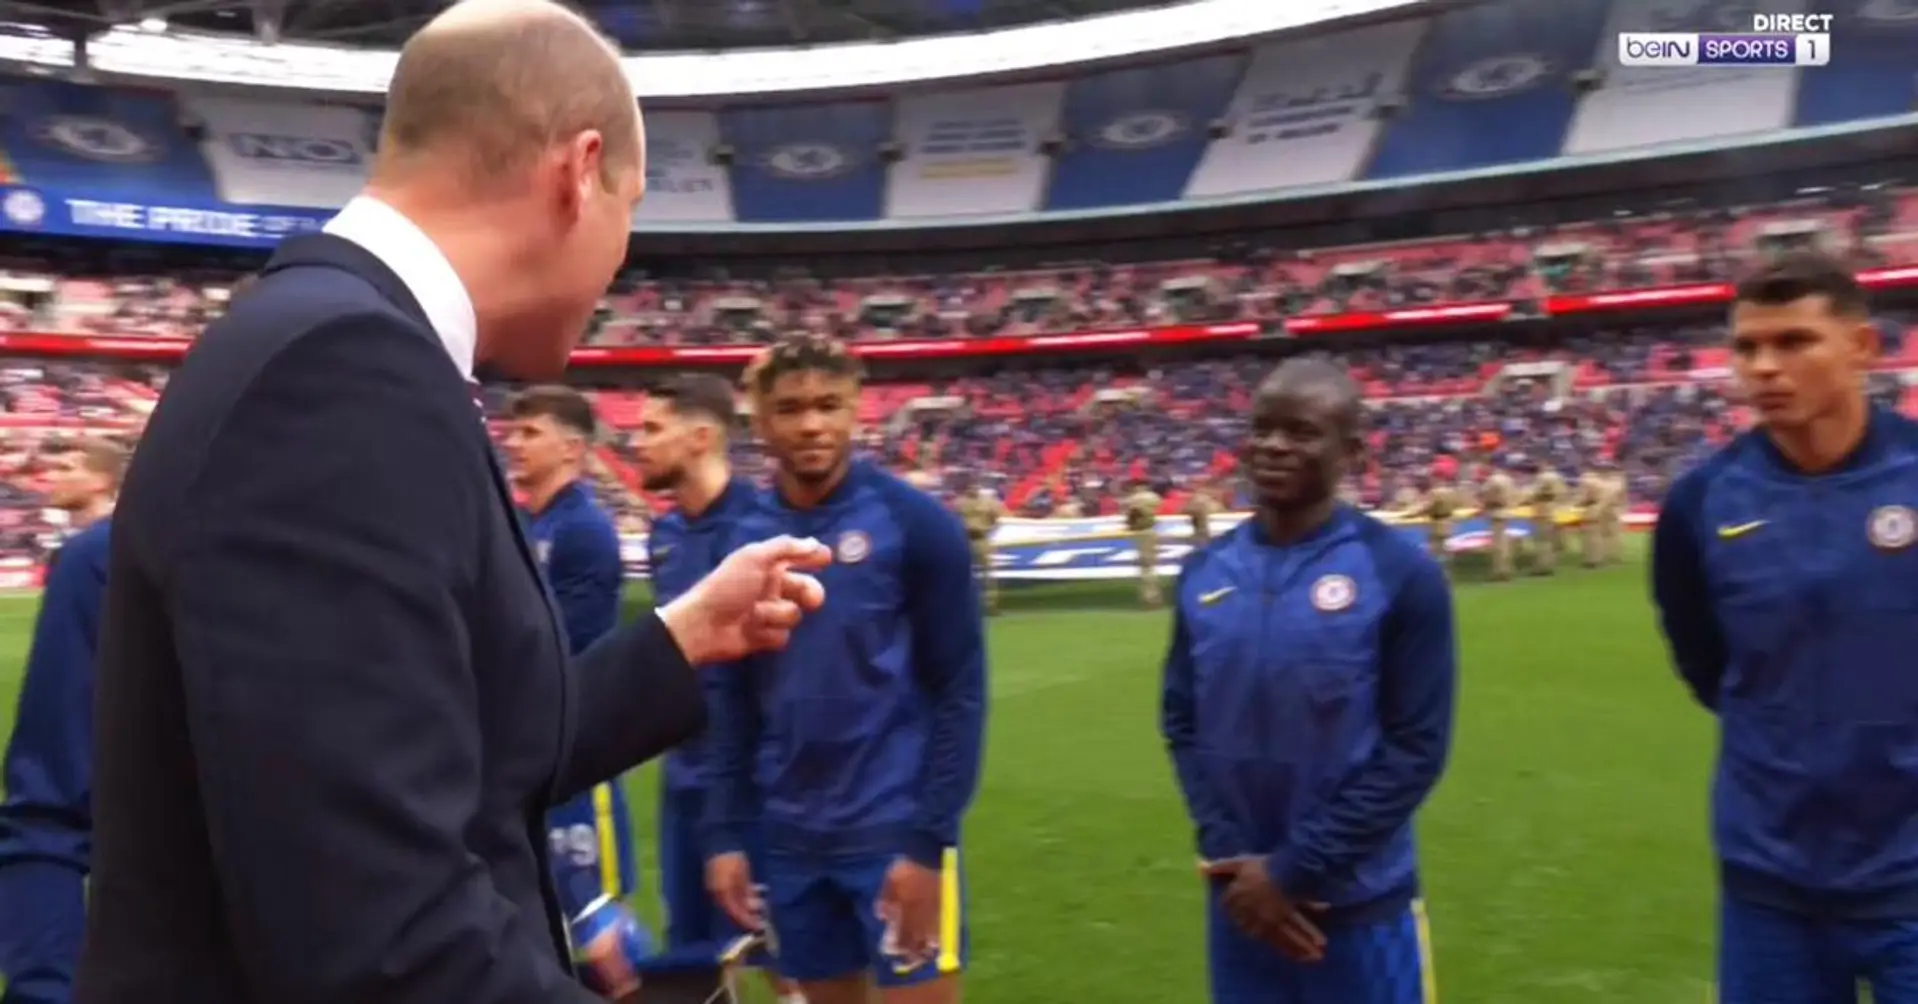 Beau moment entre le prince William et N’Golo Kante filmé avant la finale de la FA Cup